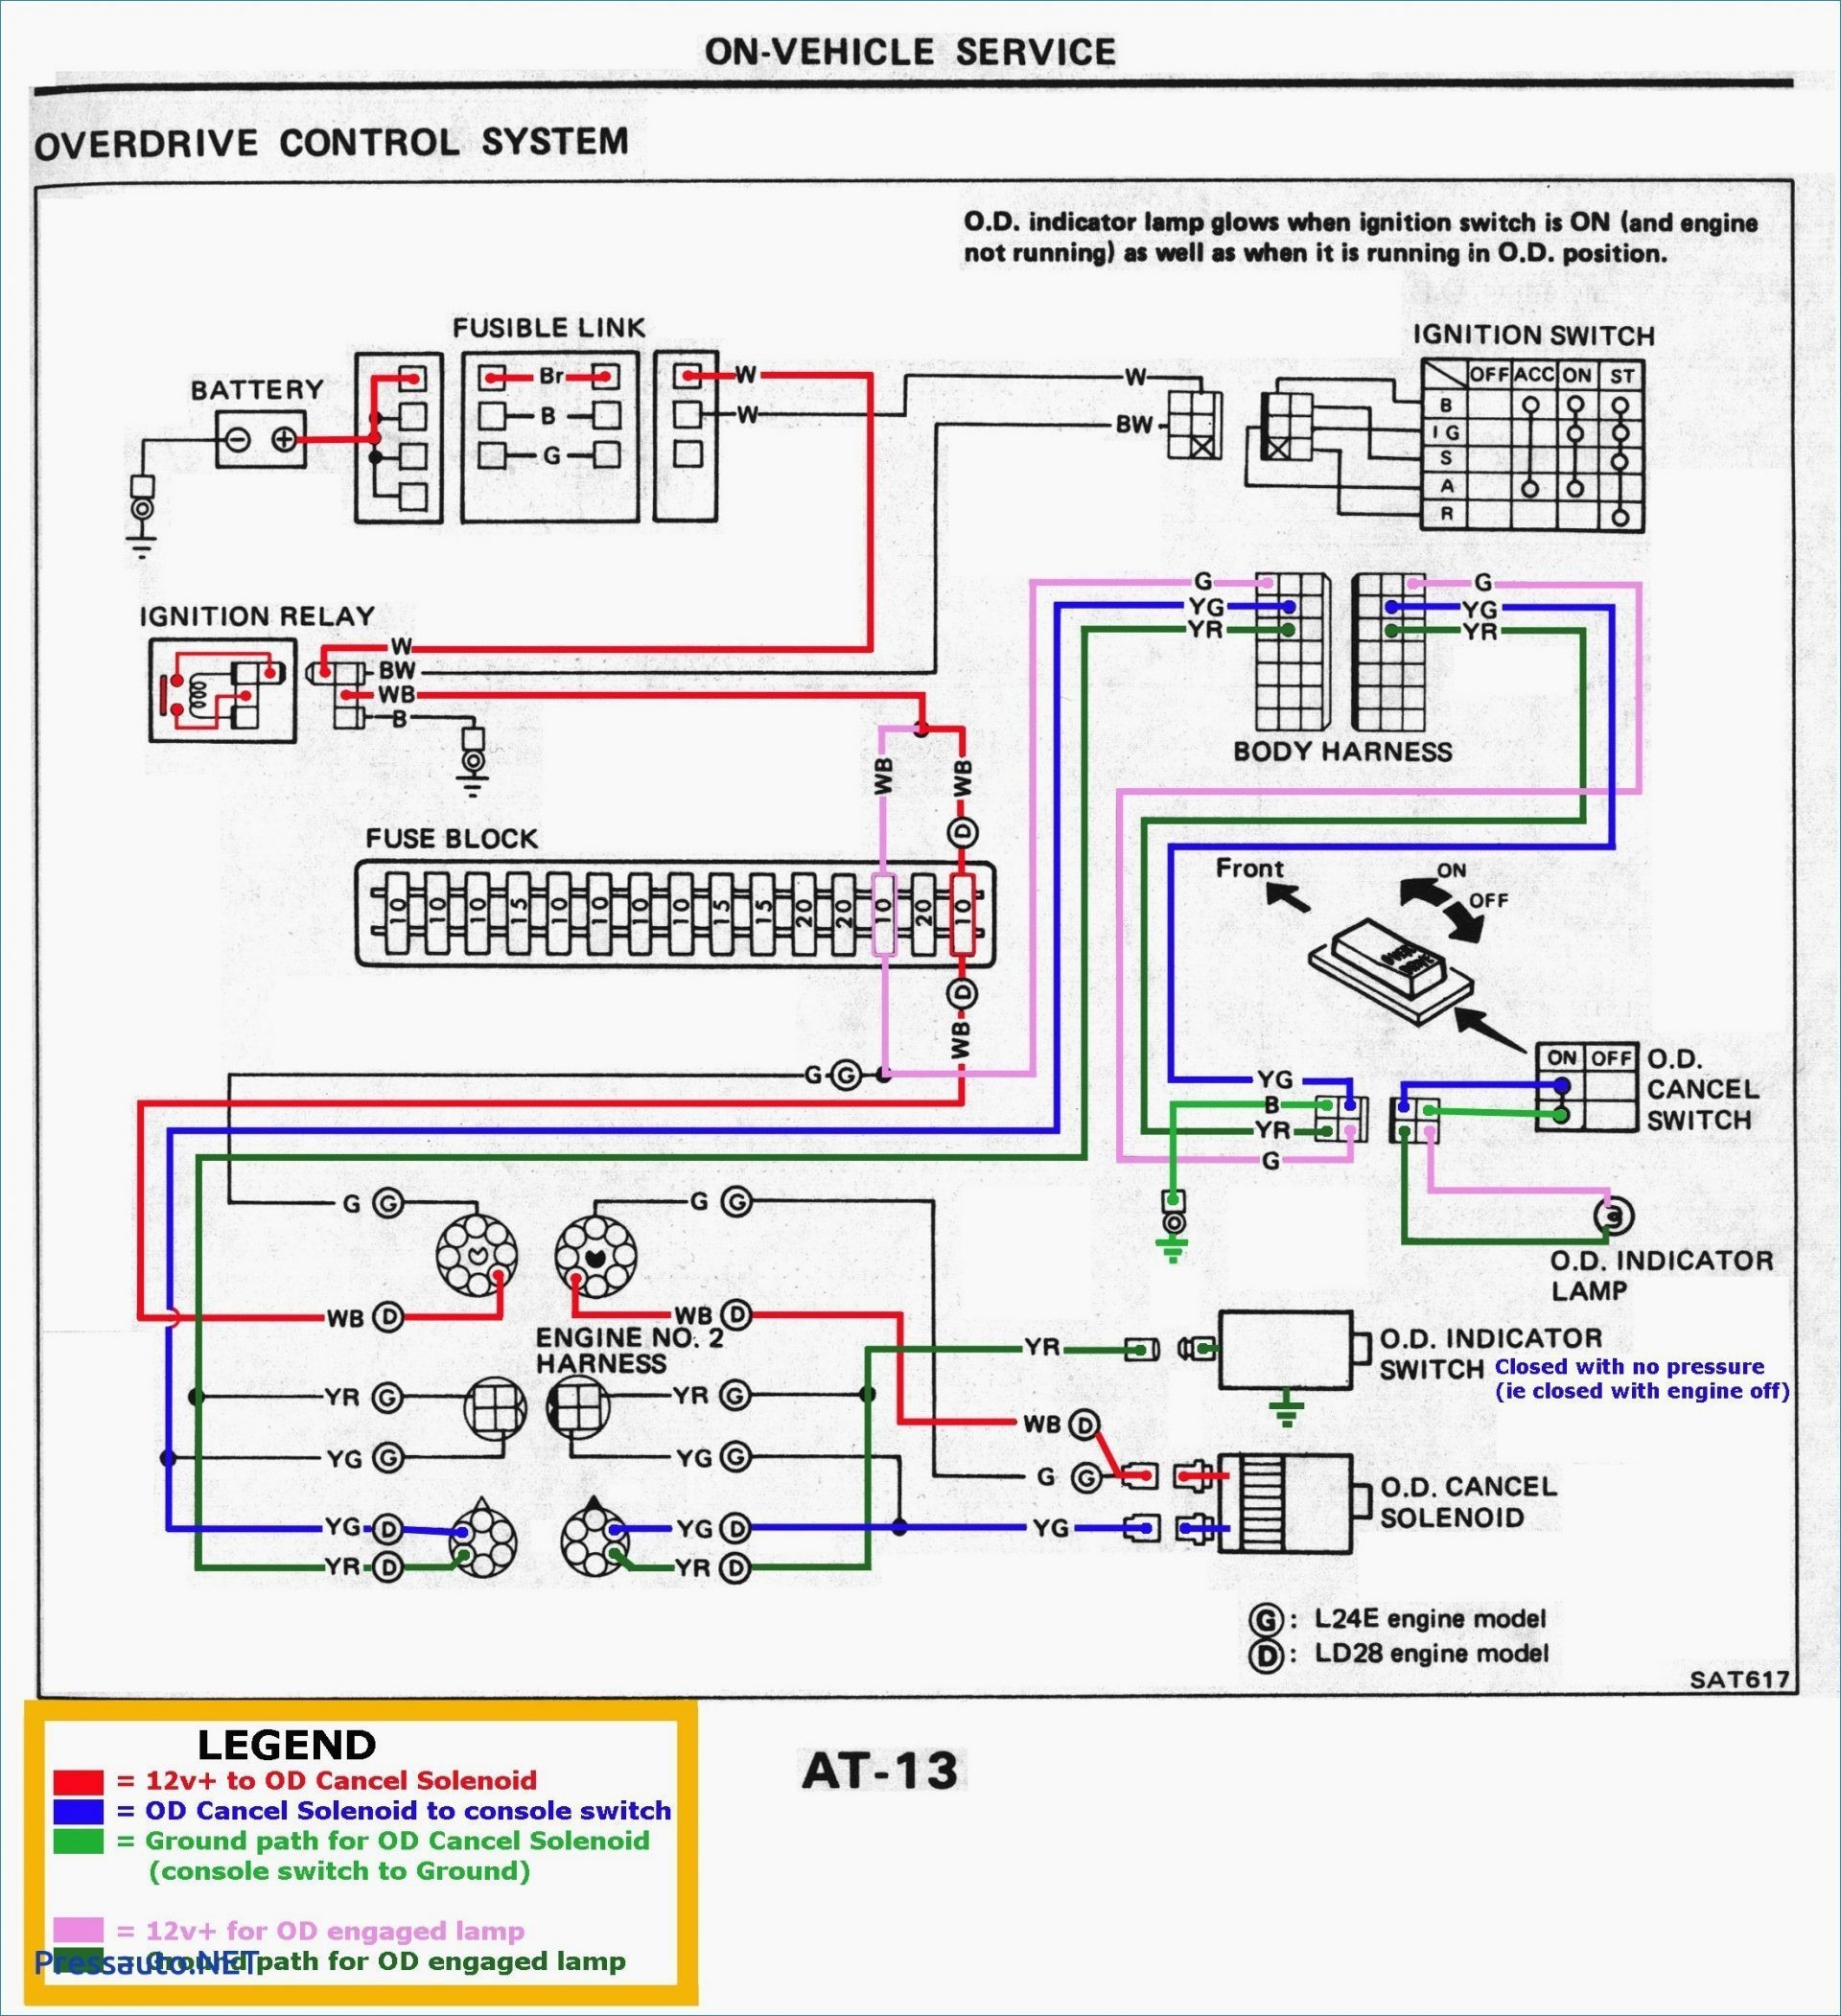 Wiring Diagram for 220 Volt Generator Plug Fresh Wiring Diagram for Receptacle Valid 240 Volt Plug